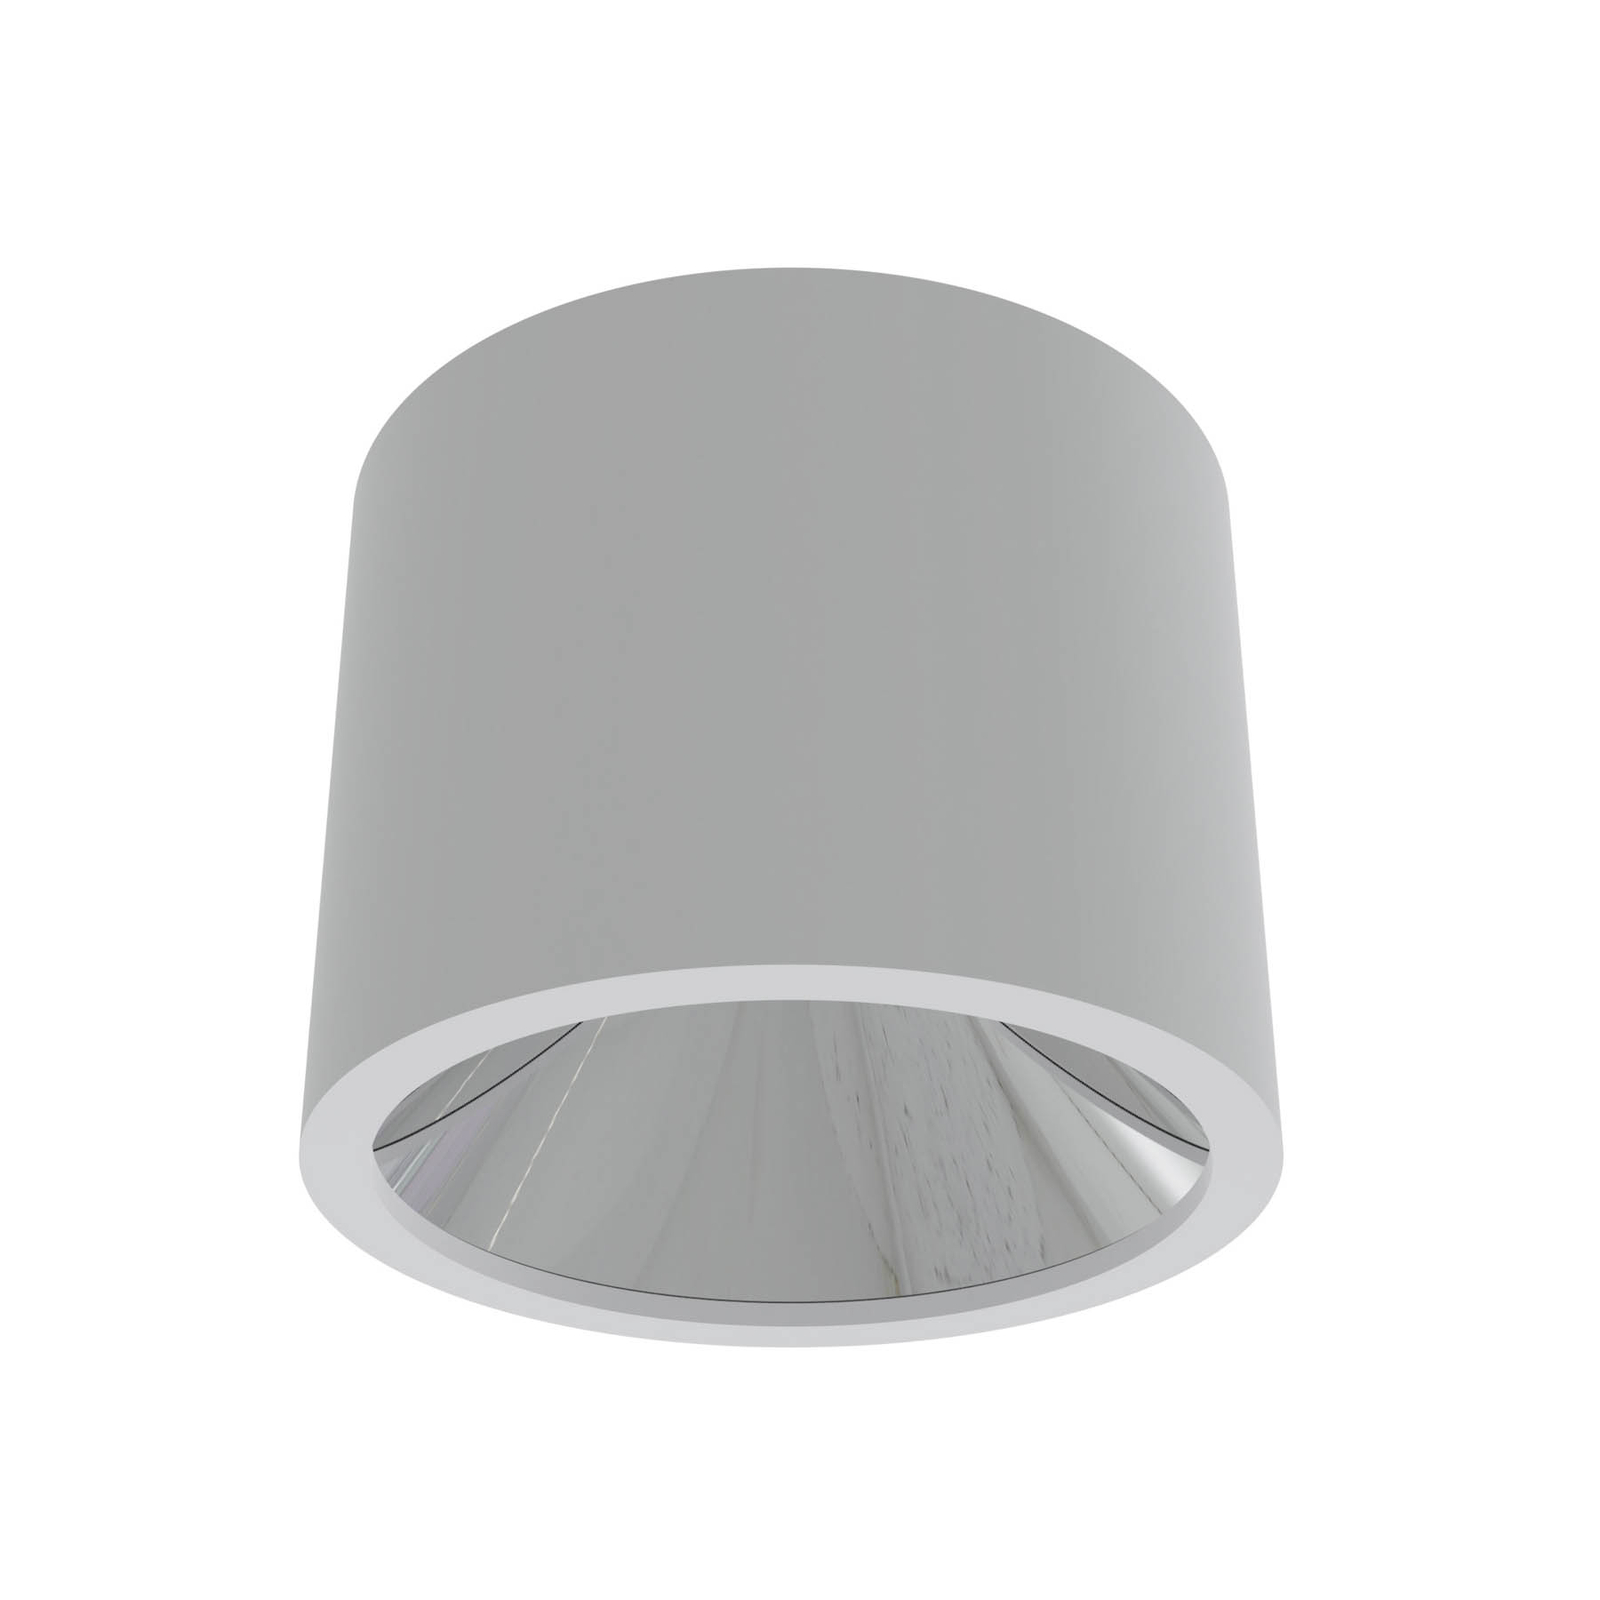 ALG54 LED ceiling spotlight, Ø 21.3 cm white